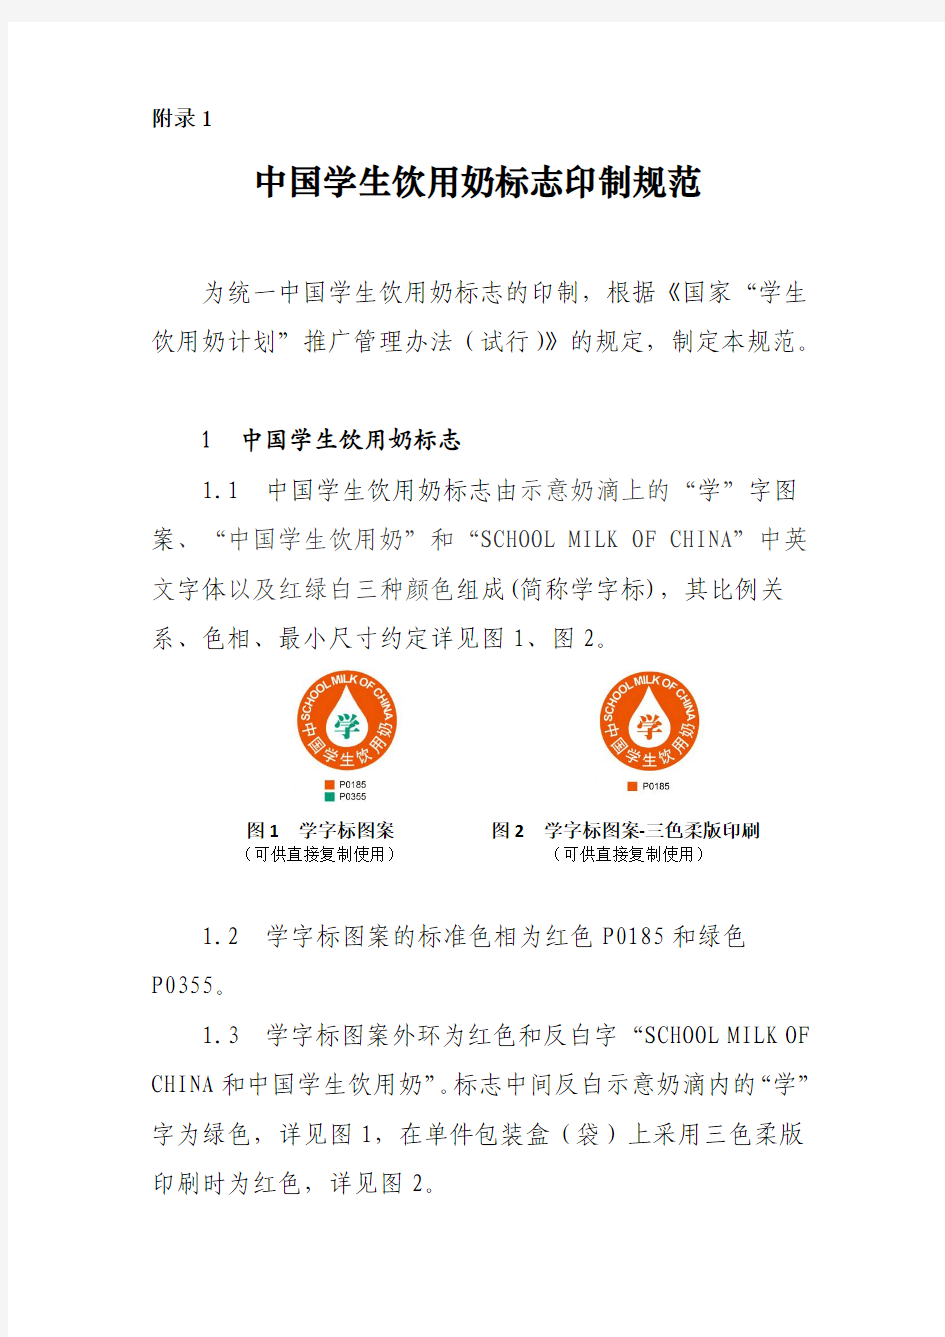 中国学生饮用奶标志印制规范